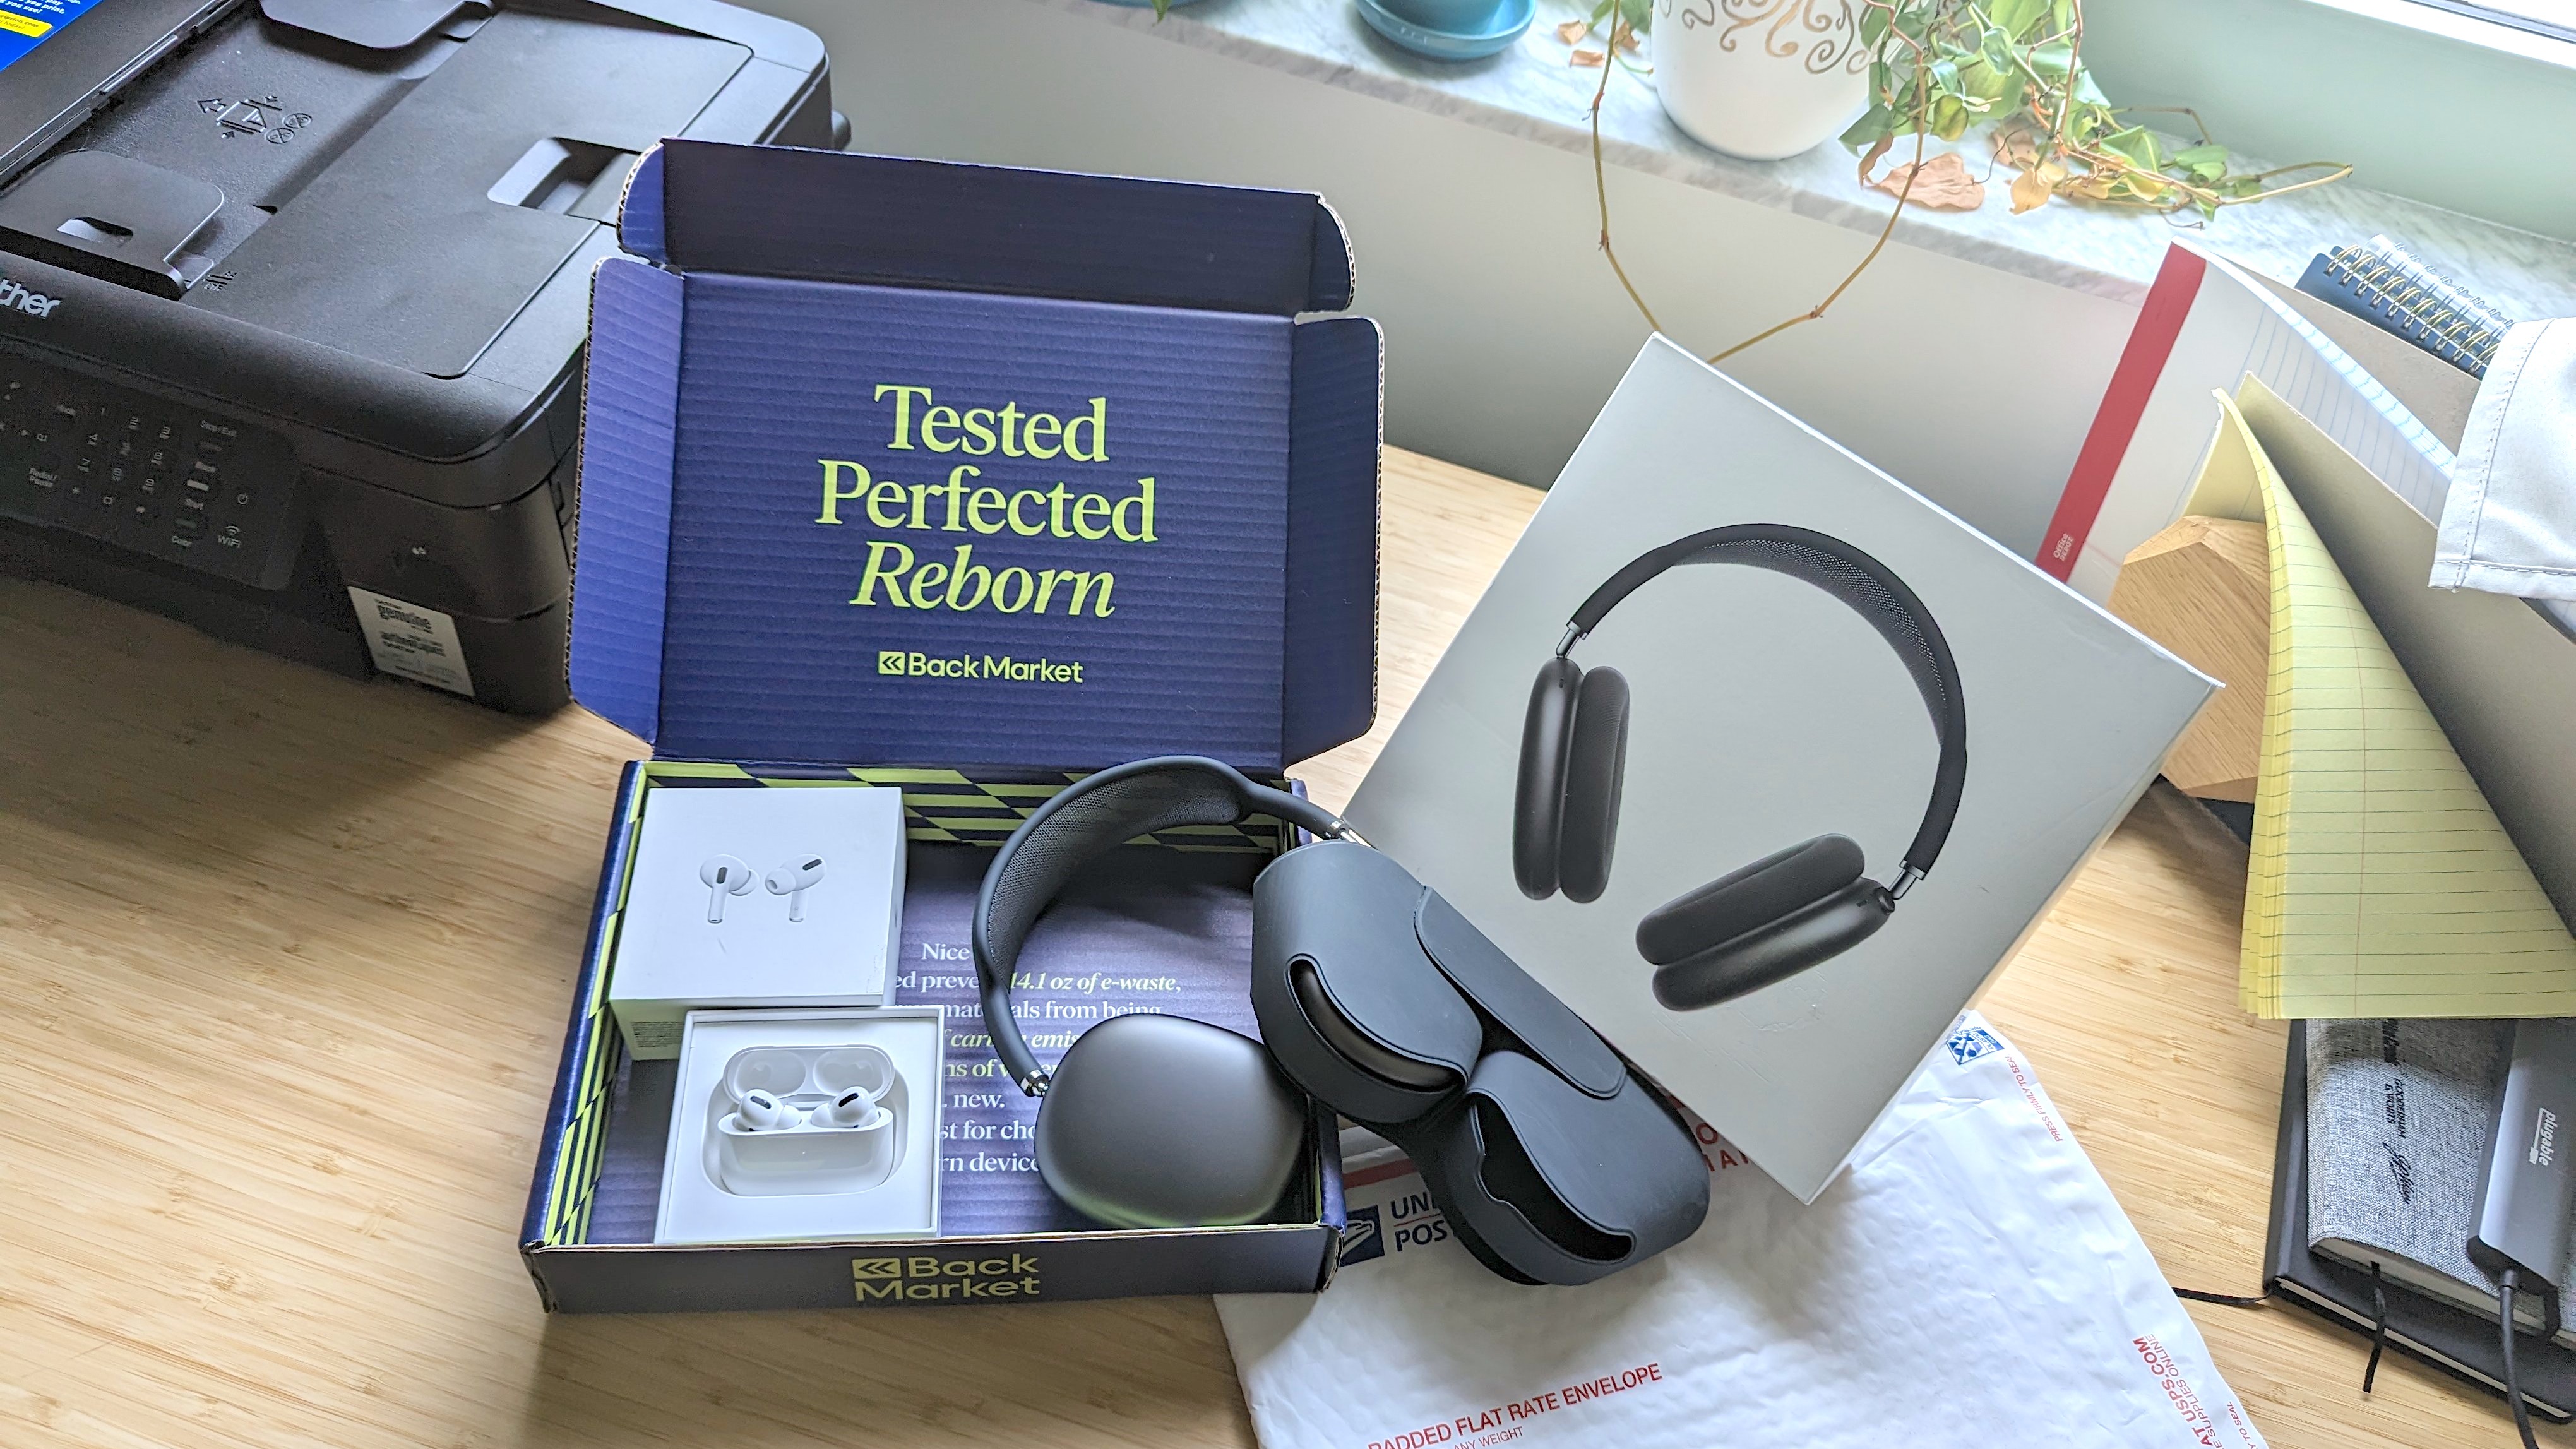 Bose QuietComfort II Noise Cancelling Headphones, Certified Refurbished